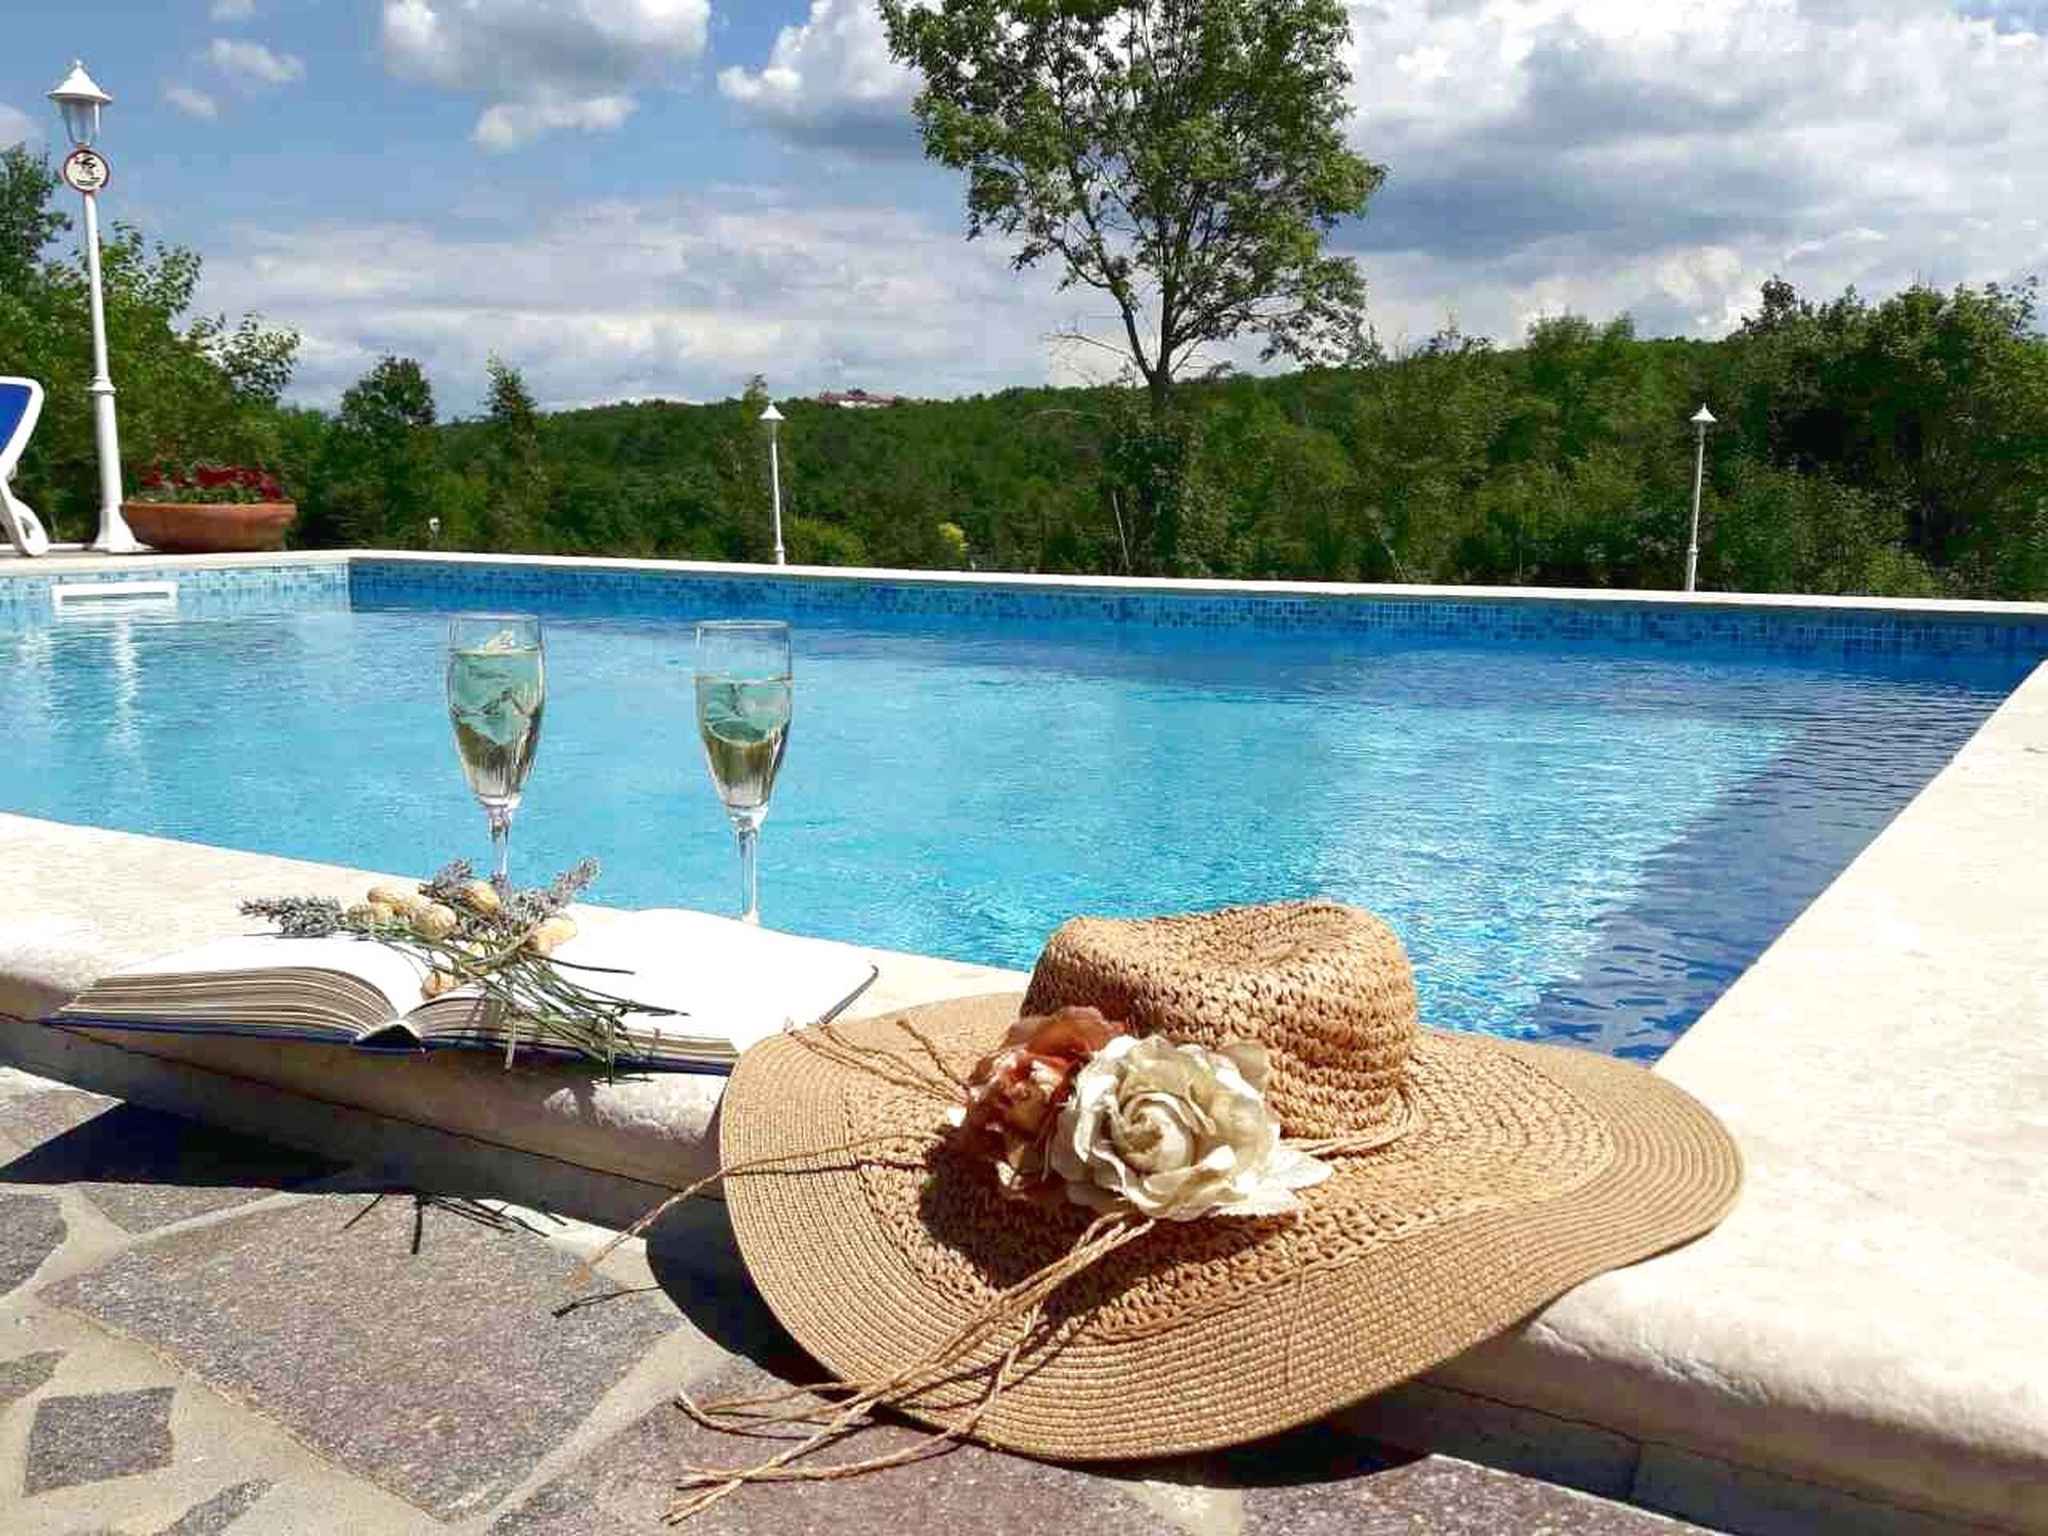 Villa mit Pool in ruhiger Lage Ferienhaus in Kroatien